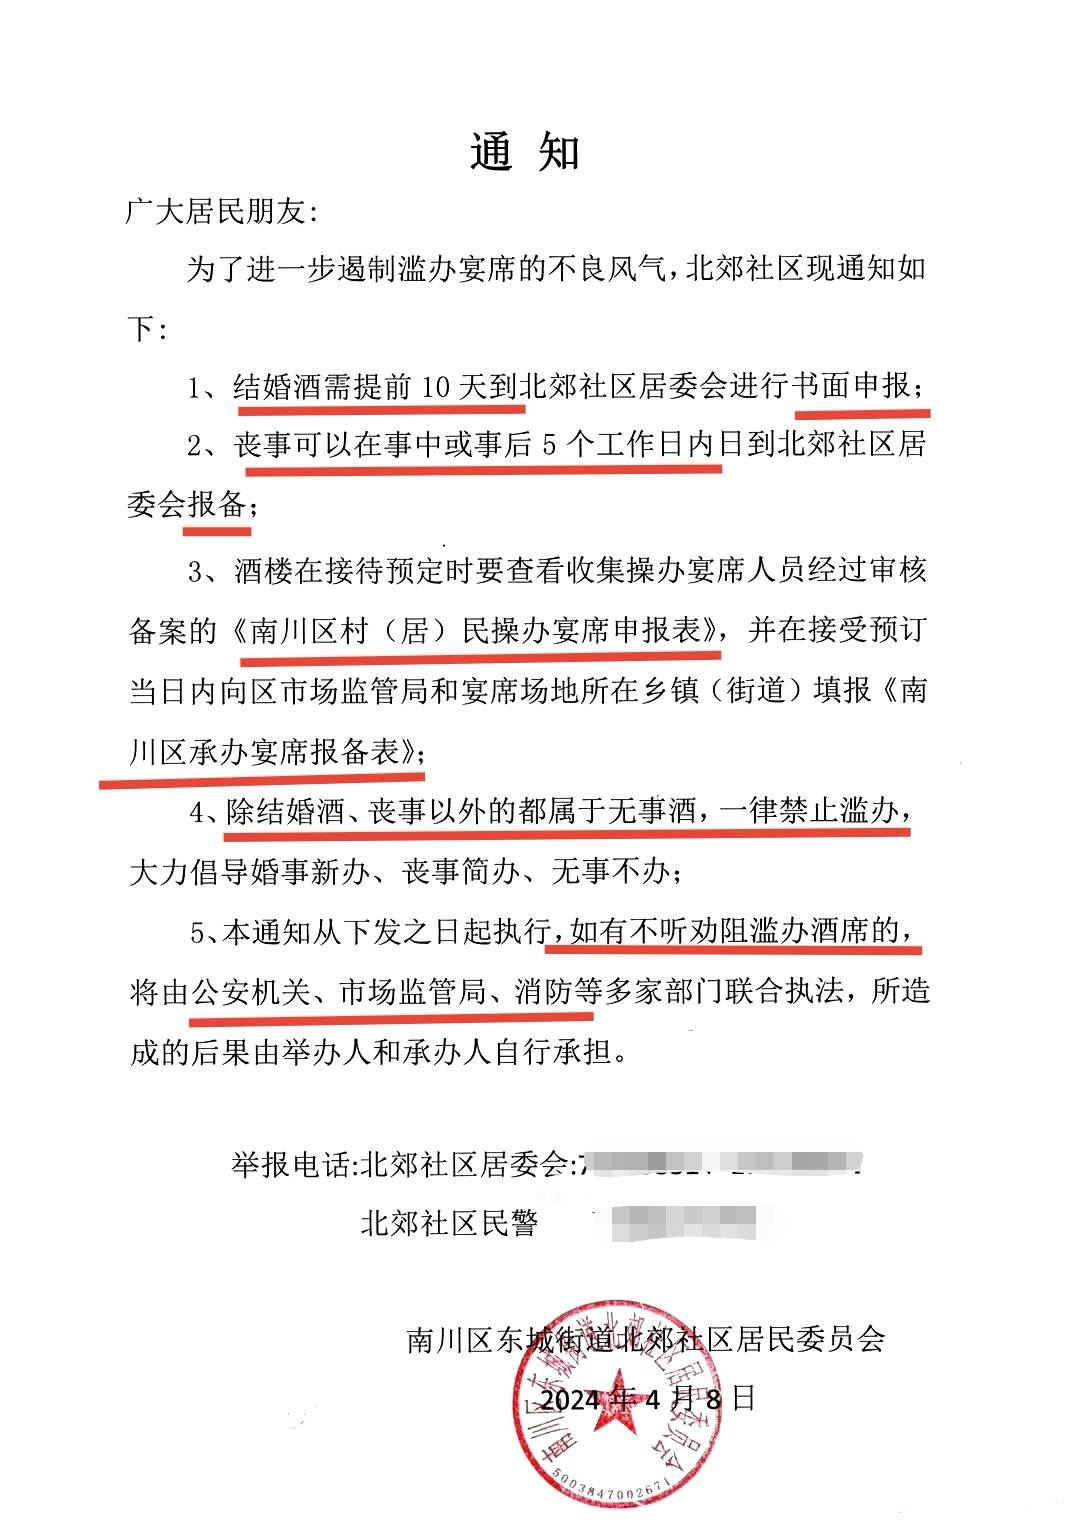 重庆社区回应要求婚丧宴席报备争议,违者查消防?